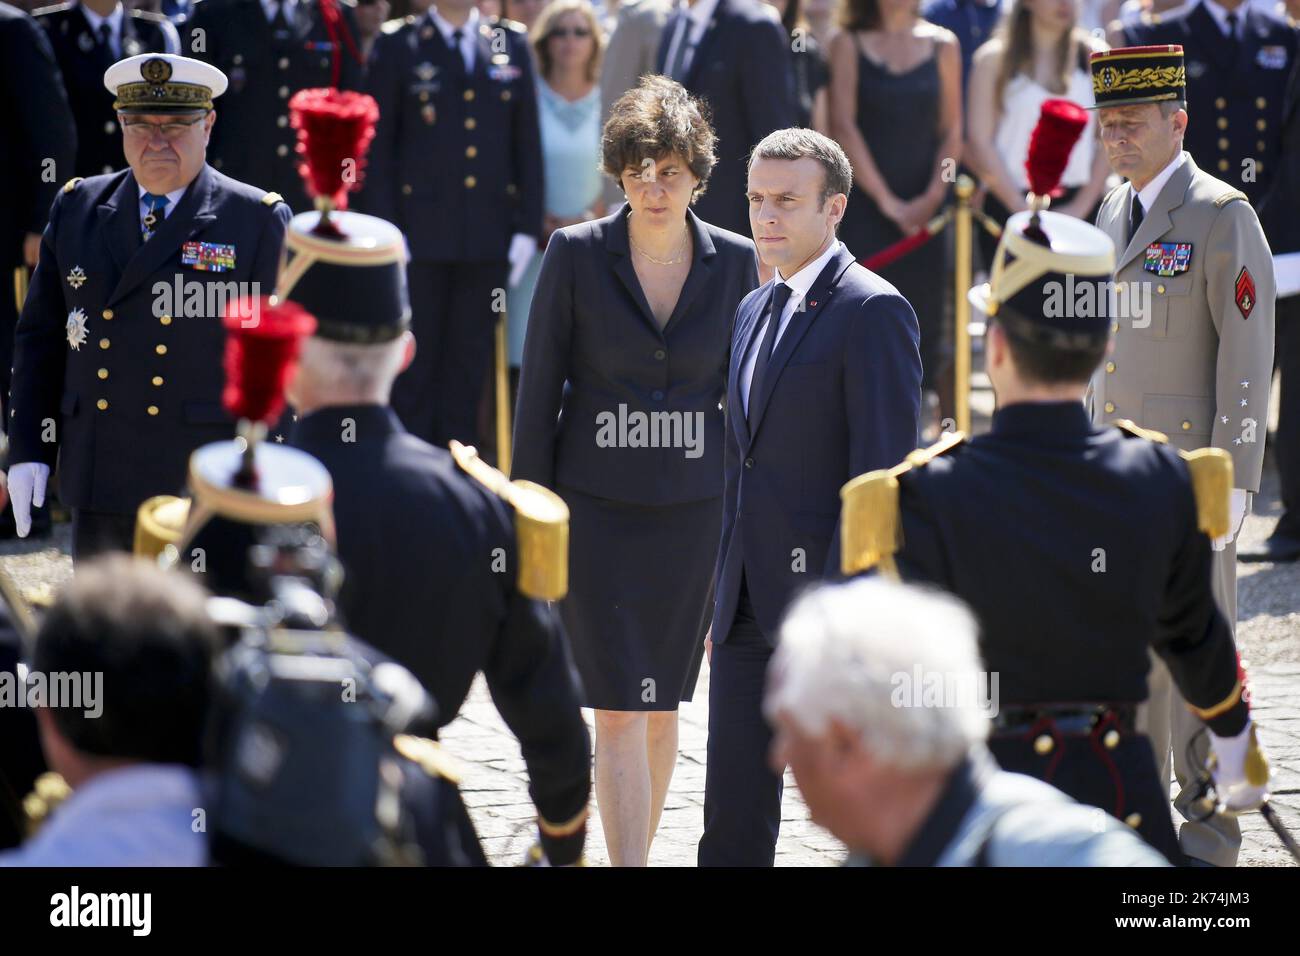 Emmanuel Macron partecipa ad una cerimonia in occasione del 77th° anniversario dell'appello del generale Charles de Gaulle del 18 giugno 1940, al Memoriale di Mont Valerien a Suresnes, nei pressi di Parigi, in Francia, il 18 giugno 2017. Foto Stock